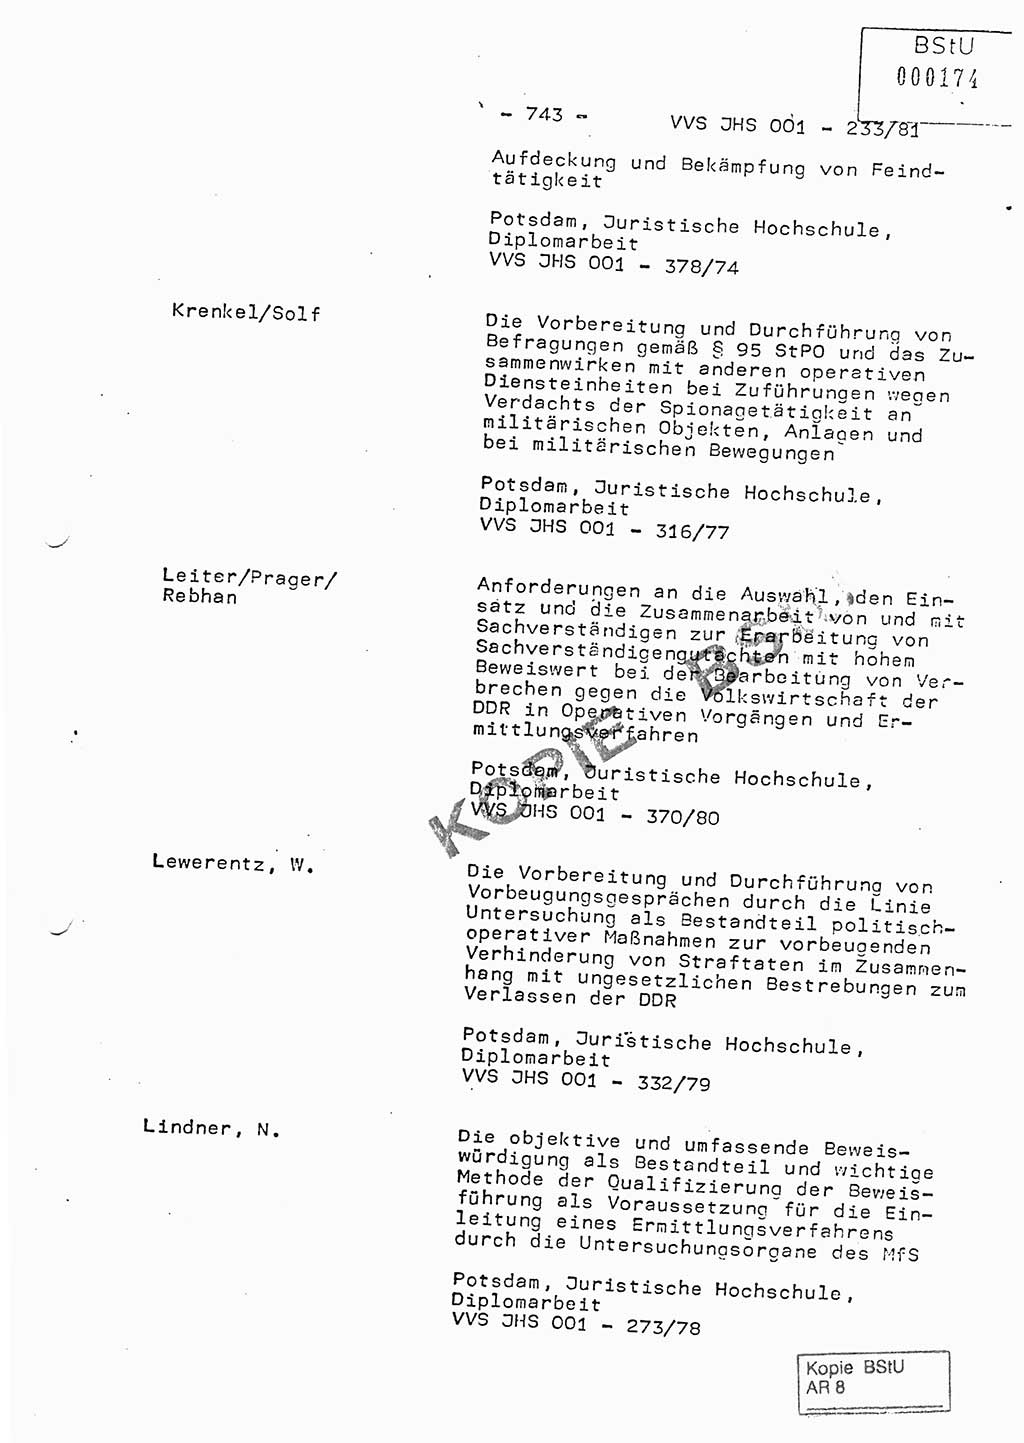 Dissertation Oberstleutnant Horst Zank (JHS), Oberstleutnant Dr. Karl-Heinz Knoblauch (JHS), Oberstleutnant Gustav-Adolf Kowalewski (HA Ⅸ), Oberstleutnant Wolfgang Plötner (HA Ⅸ), Ministerium für Staatssicherheit (MfS) [Deutsche Demokratische Republik (DDR)], Juristische Hochschule (JHS), Vertrauliche Verschlußsache (VVS) o001-233/81, Potsdam 1981, Blatt 743 (Diss. MfS DDR JHS VVS o001-233/81 1981, Bl. 743)